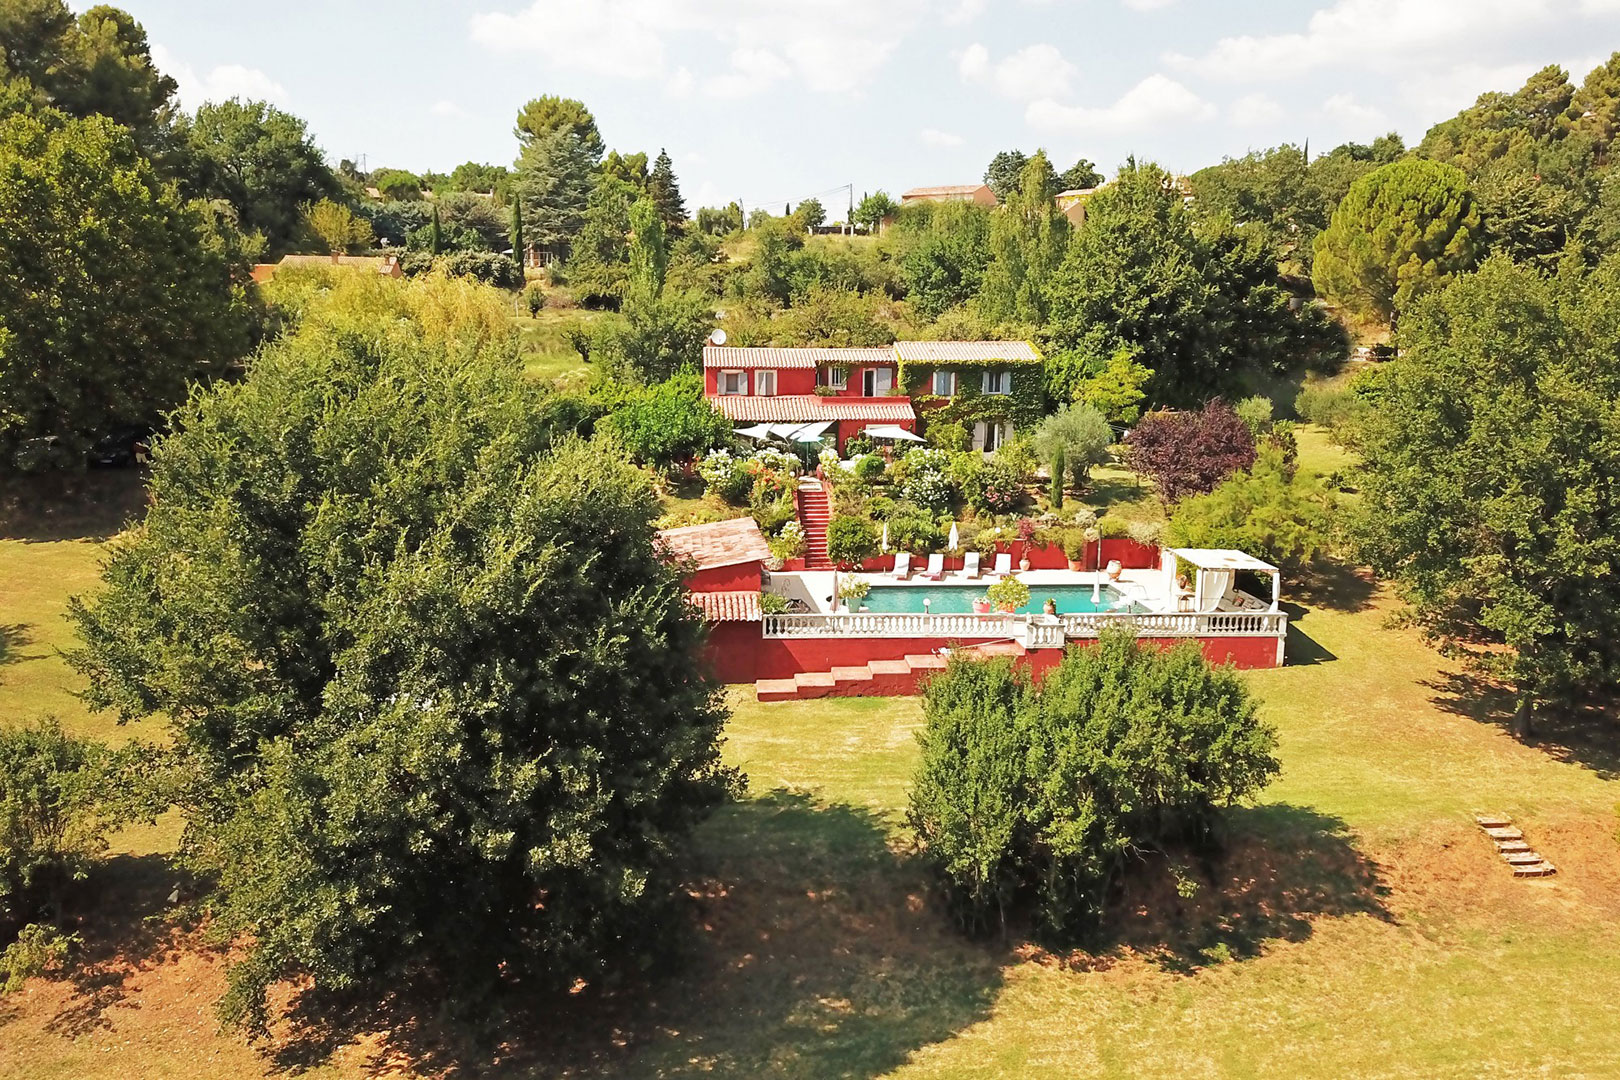 Vente Proche d'un village classe du Luberon superbe villa sur son parc de 18 000 m²